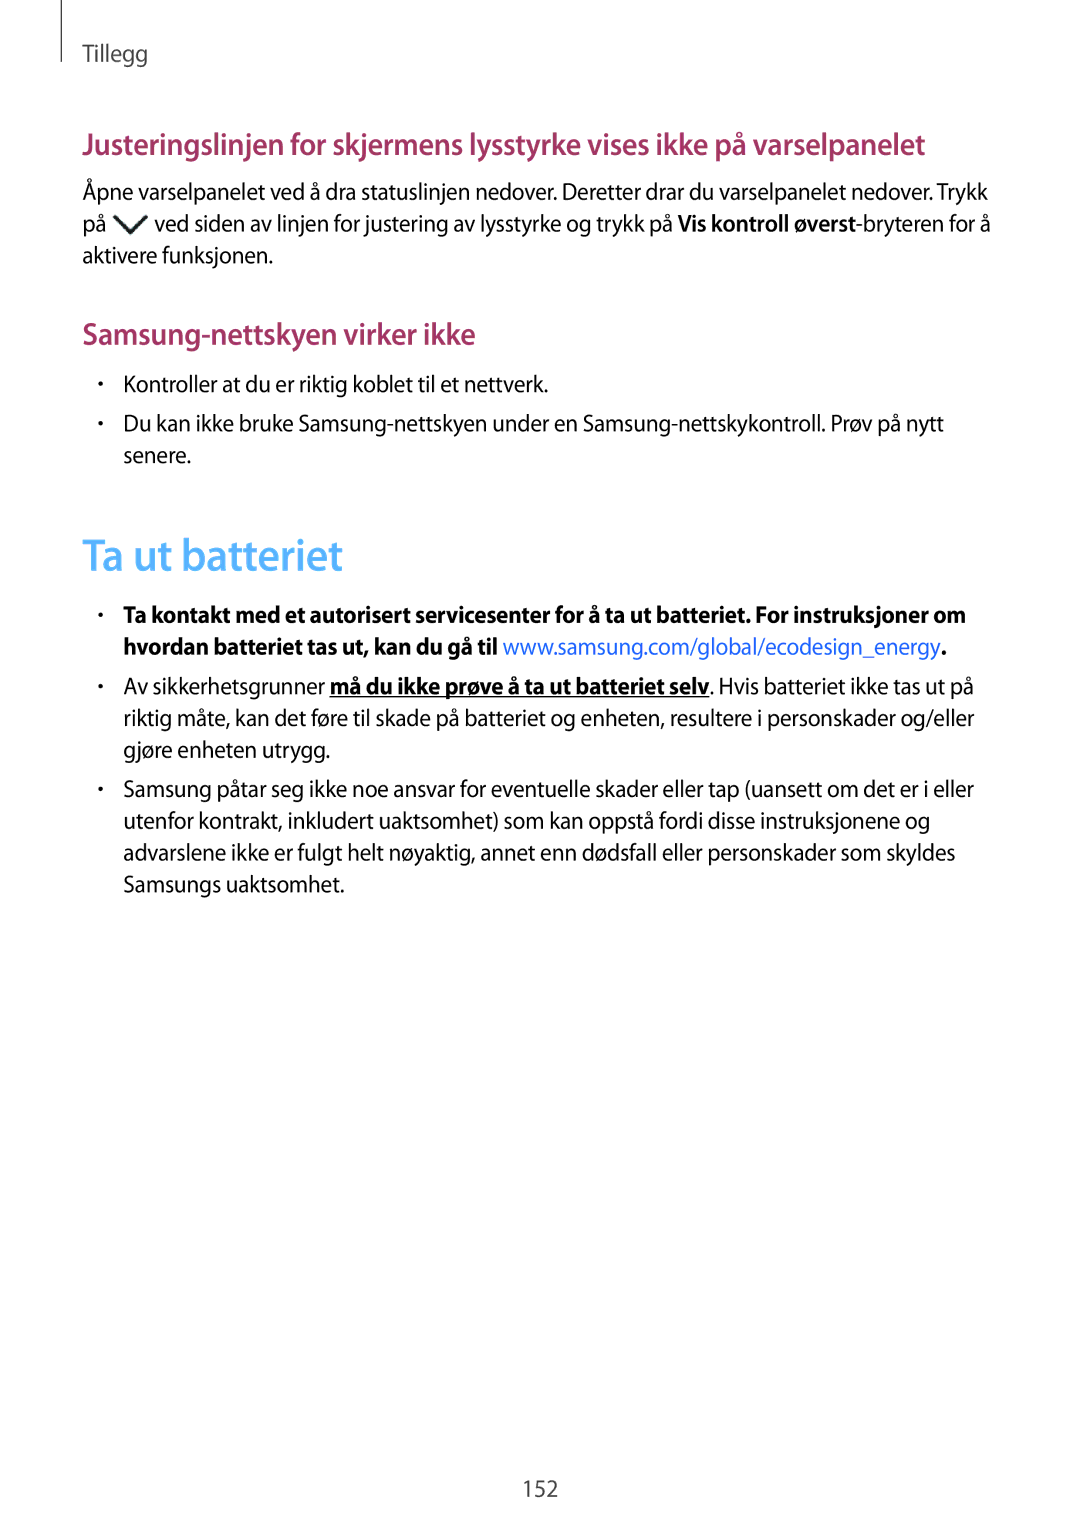 Samsung SM-A320FZINNEE, SM-A320FZKNNEE, SM-A320FZDNNEE manual Ta ut batteriet, Samsung-nettskyen virker ikke 